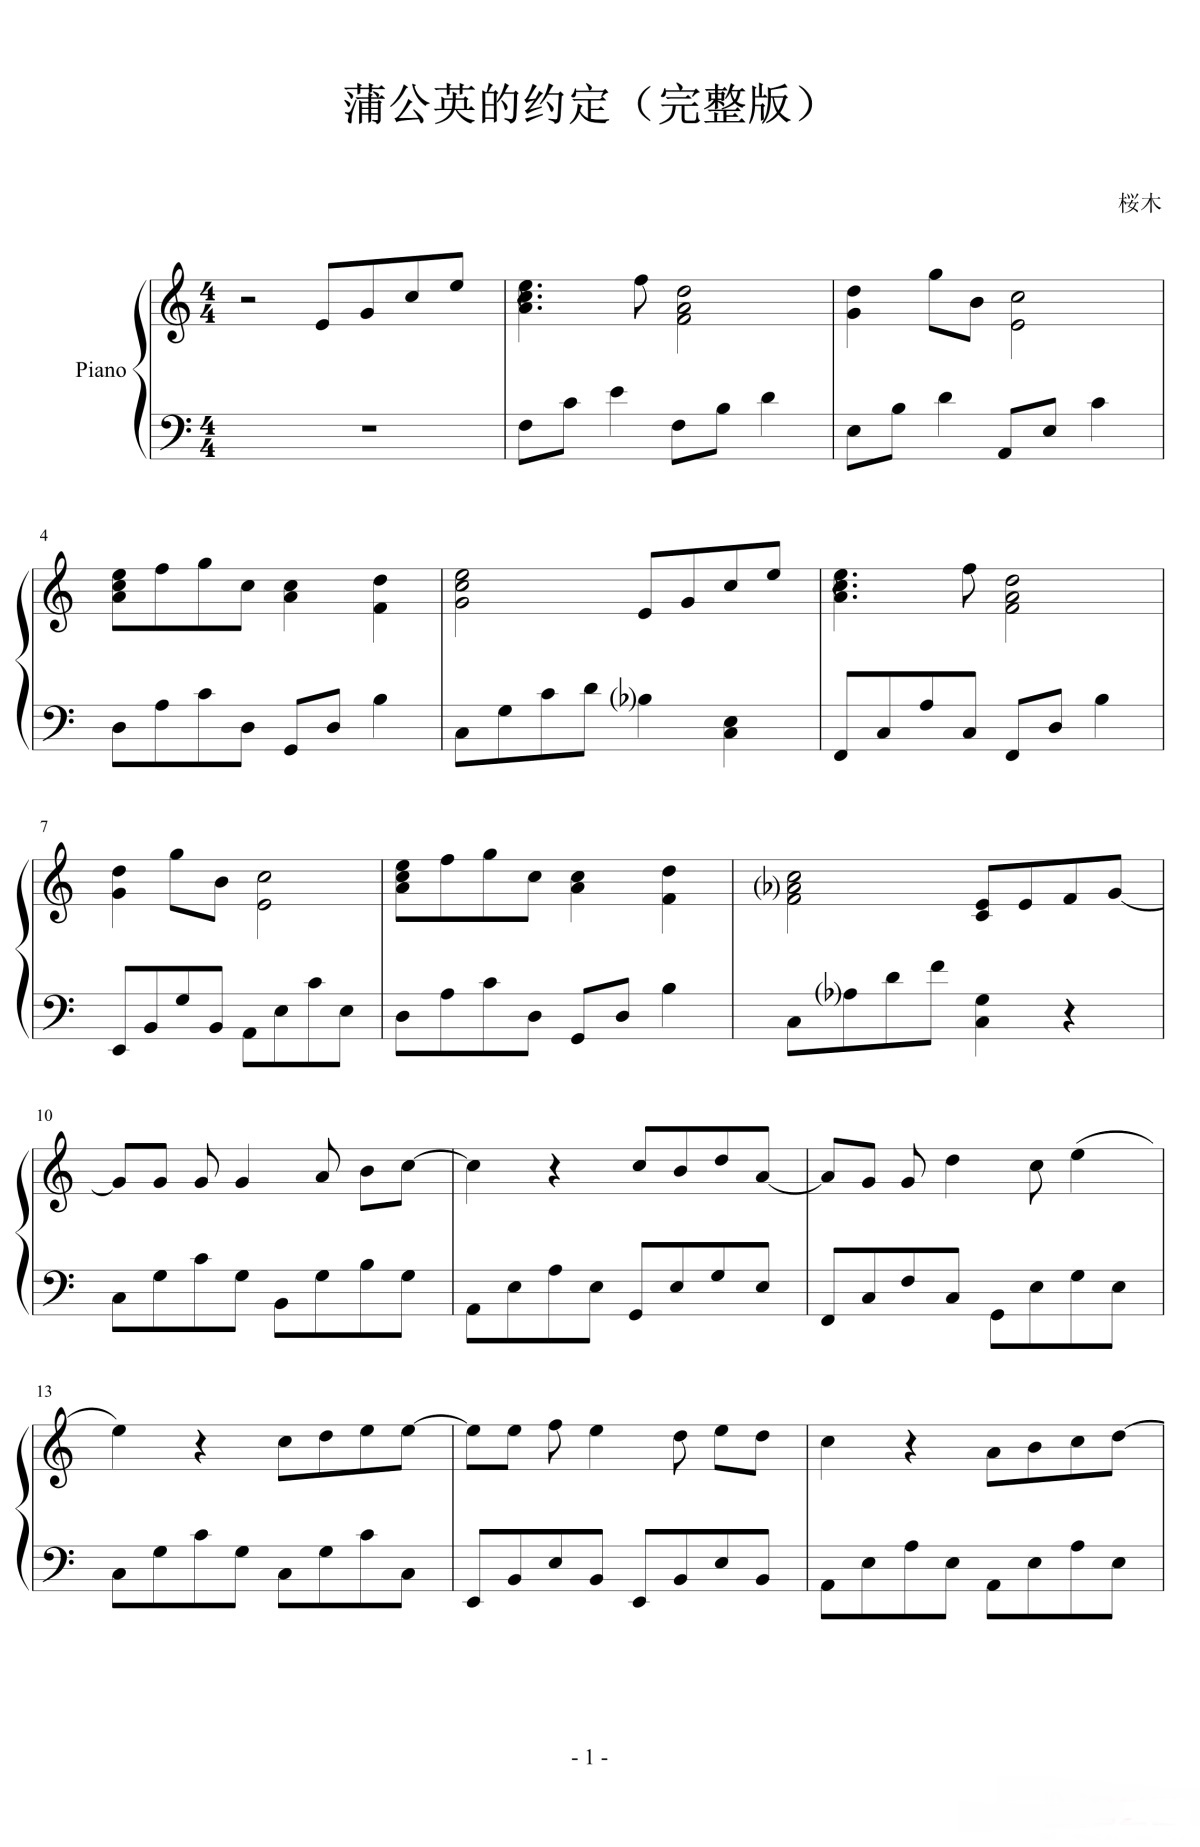 《蒲公英的约定》的钢琴谱钢琴曲谱 - 周杰伦